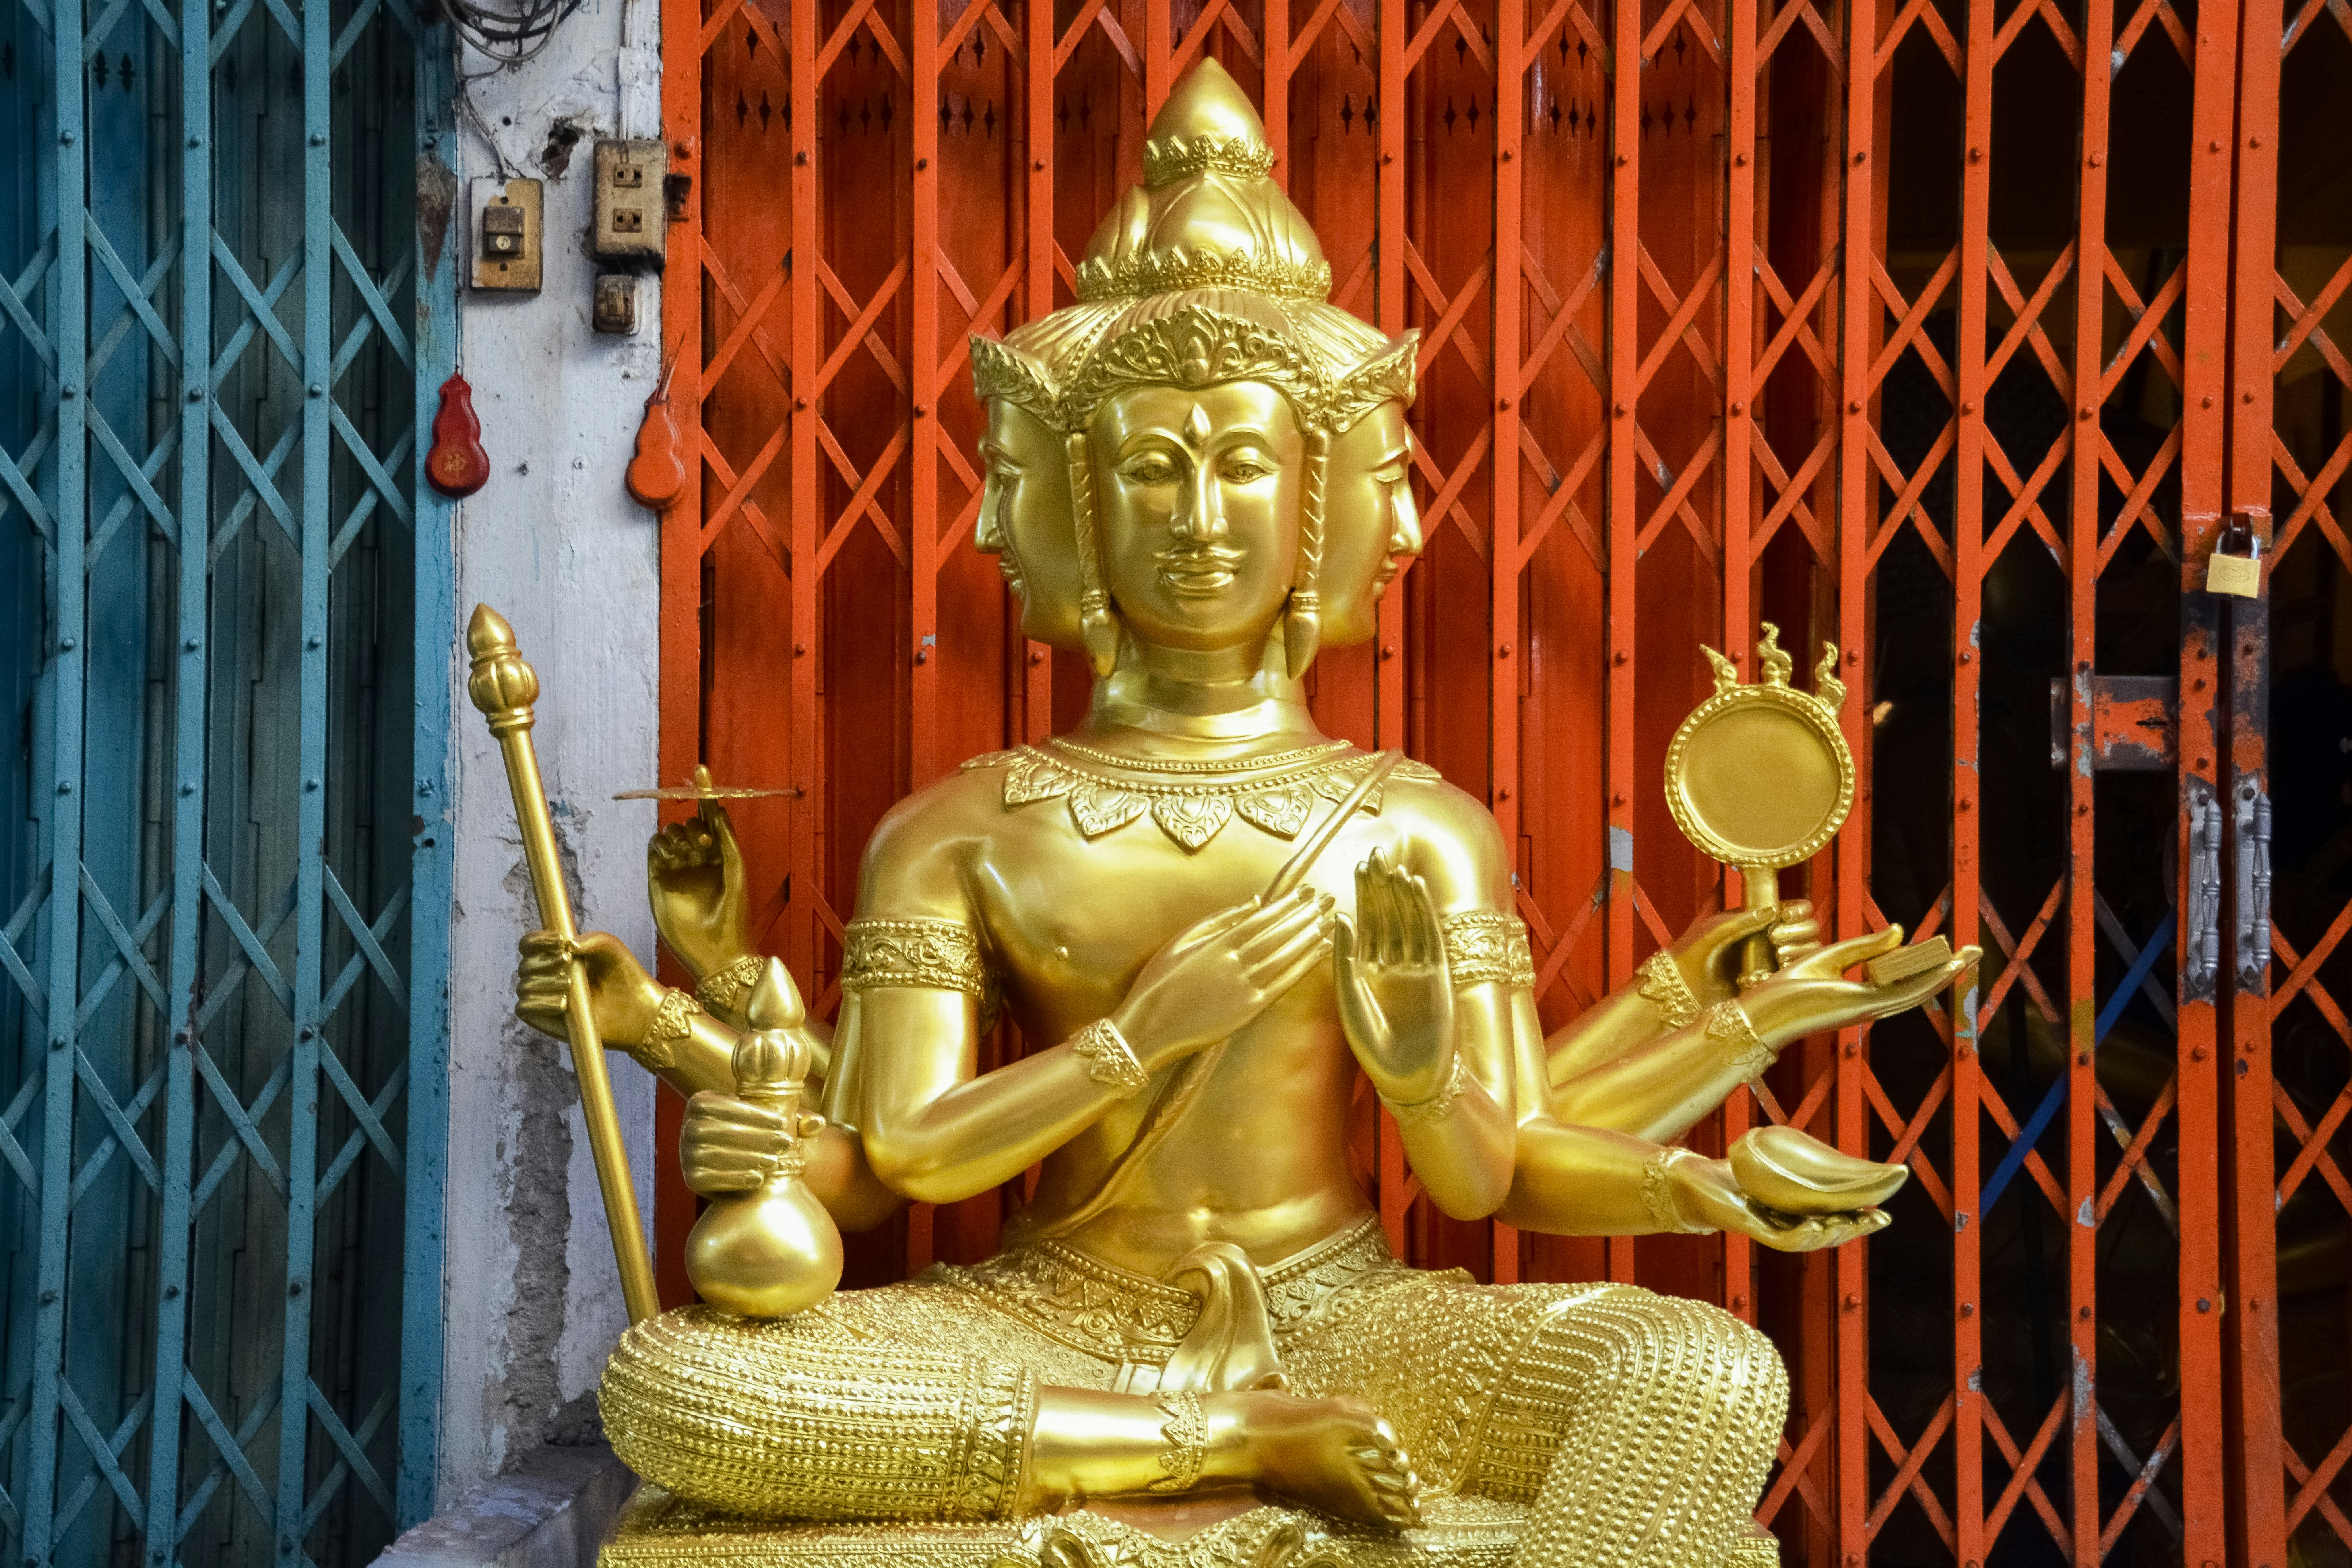 gold buddha statue near red wooden door